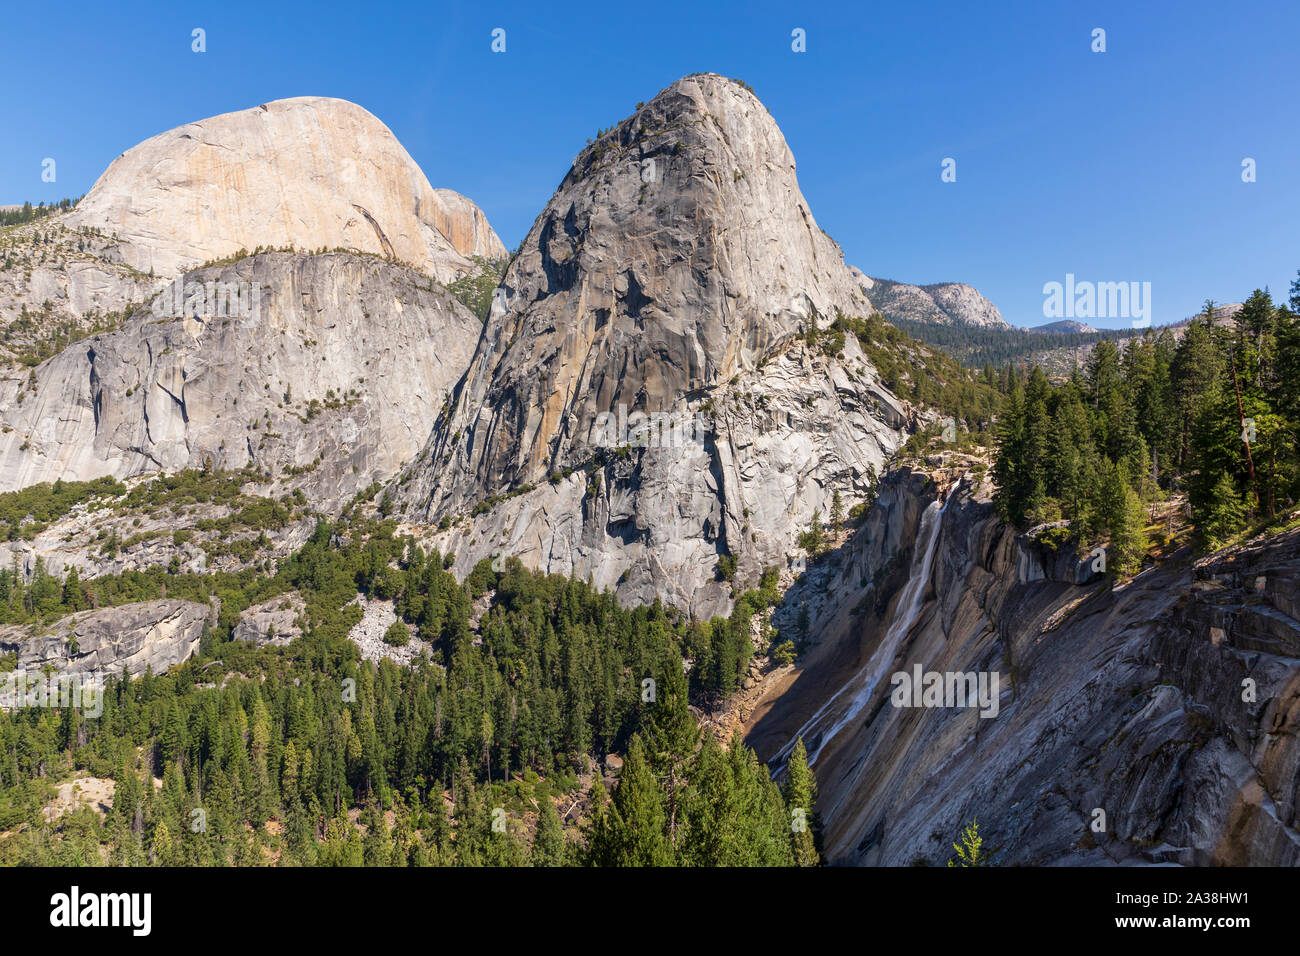 Tagesansicht des Half Dome, Liberty Cap und Nevada fällt im Yosemite National Park, californa an einem sonnigen Tag im September 2019. Stockfoto